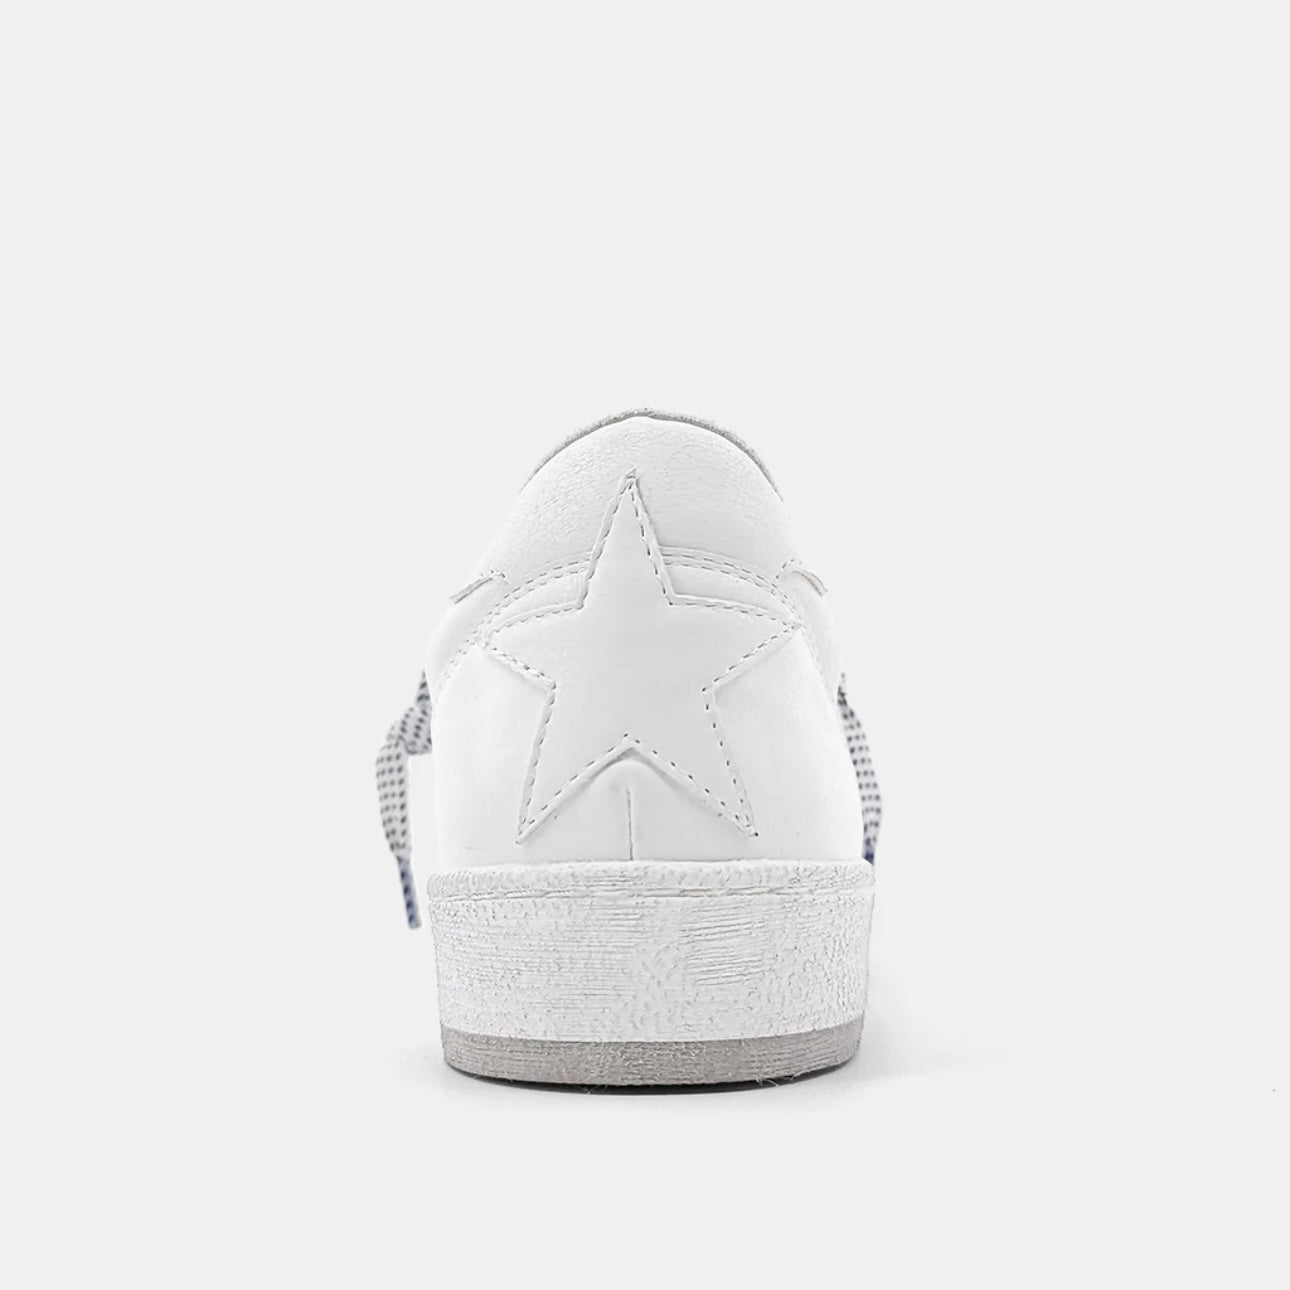 Park Sneaker in White by Shu Shop